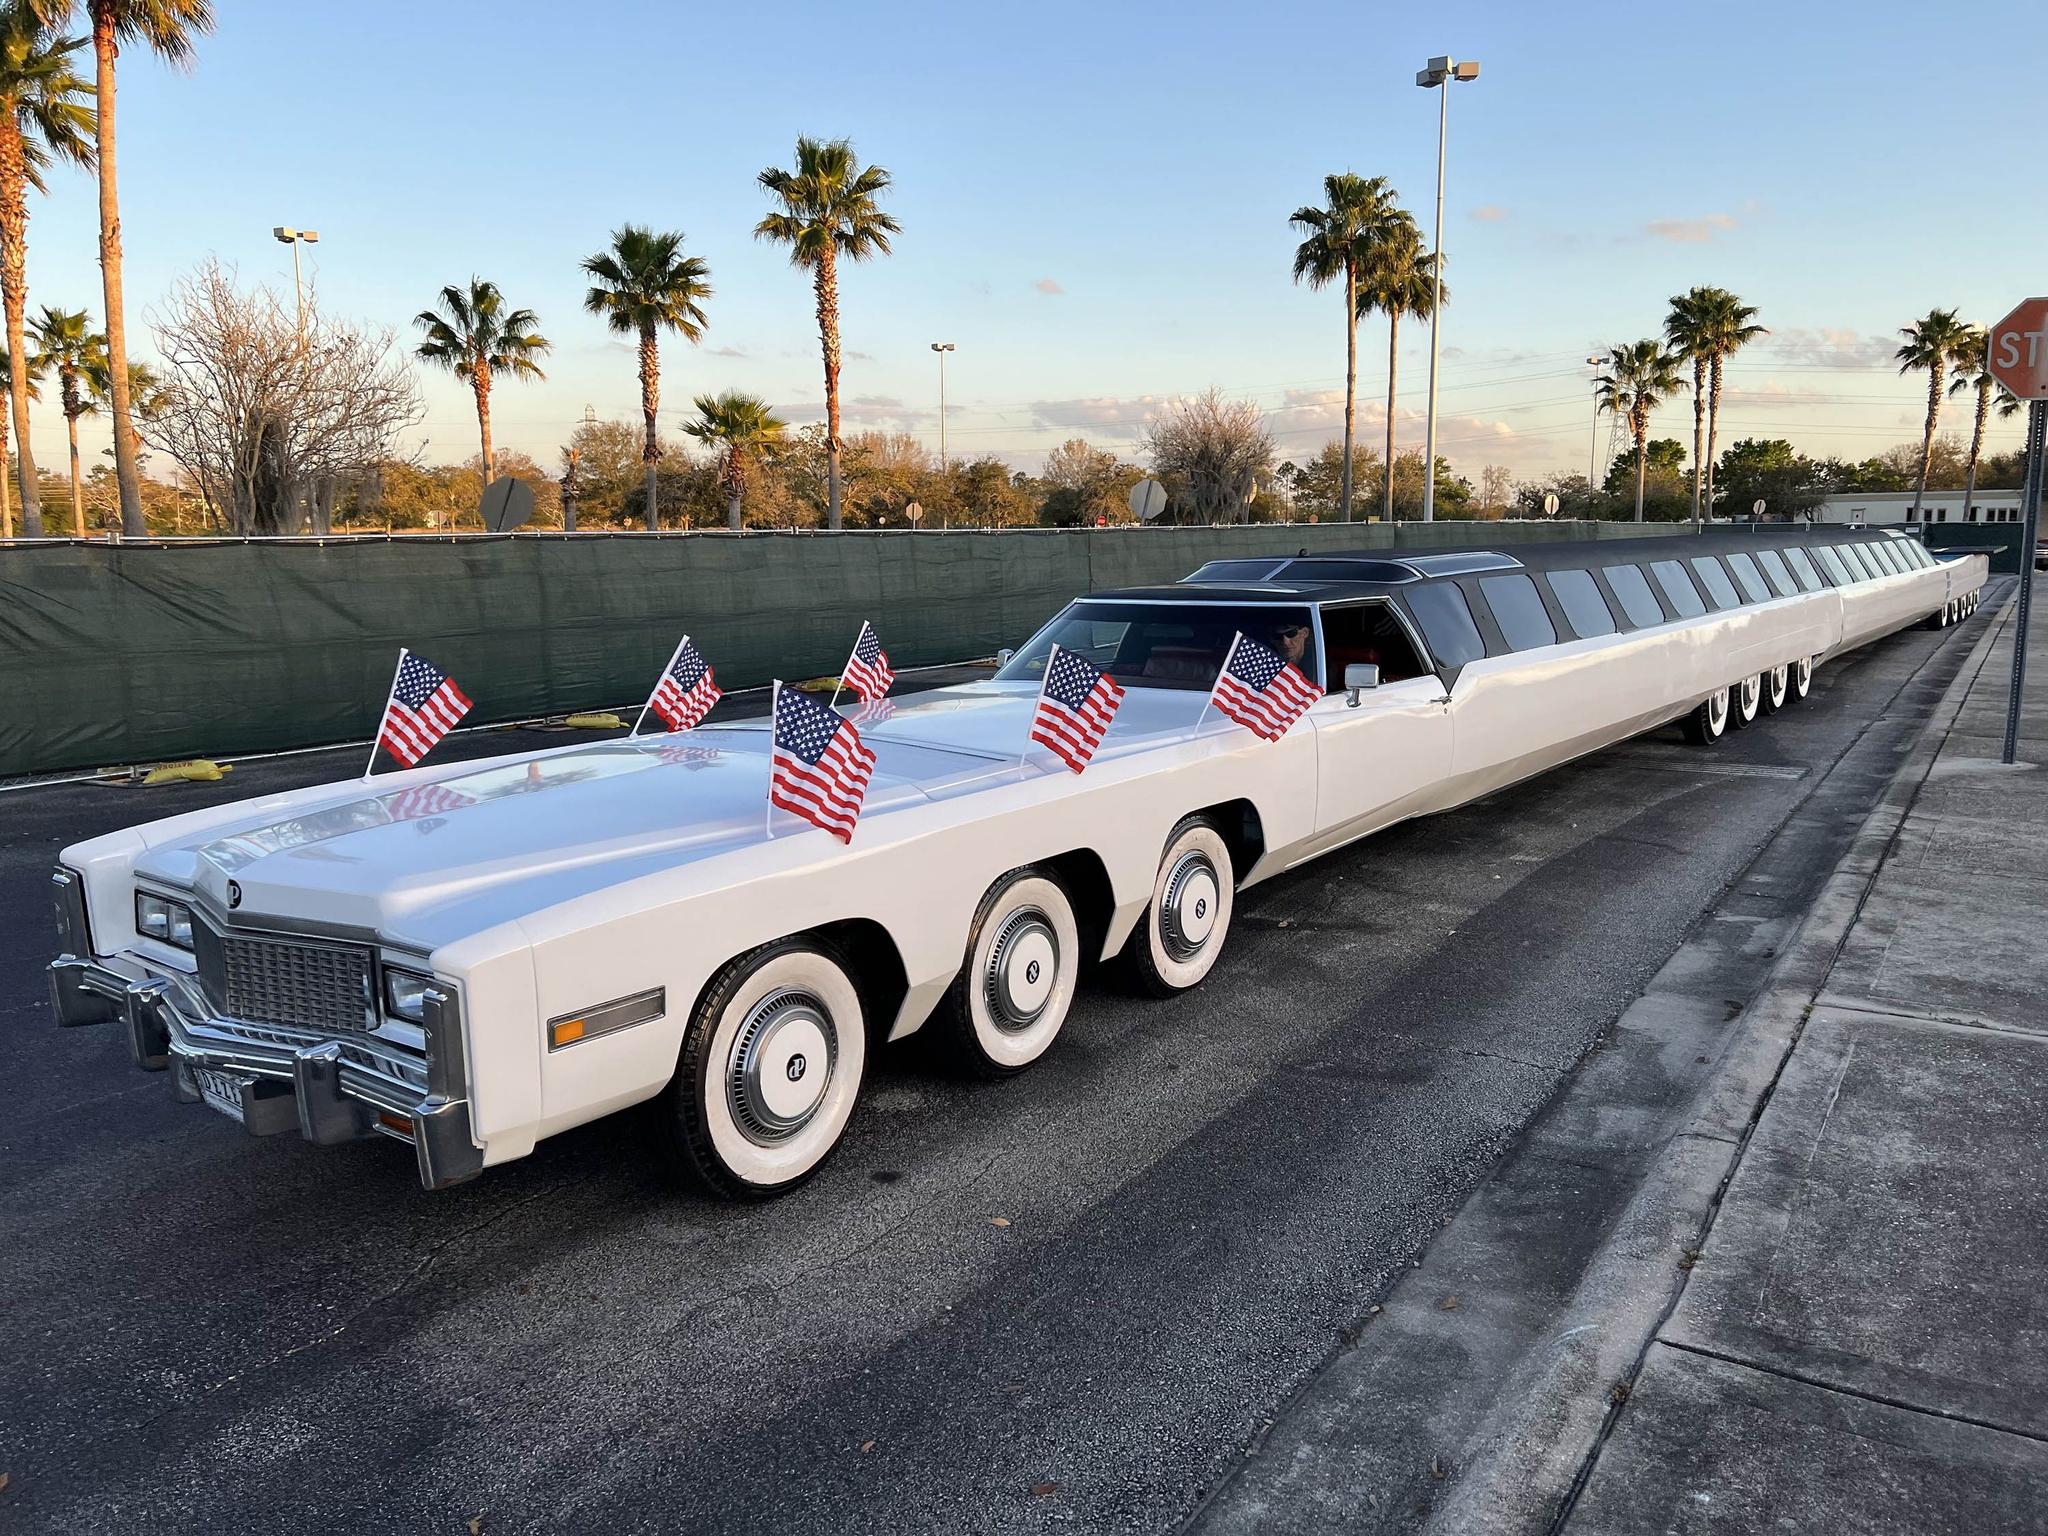 Super Limousine Breaks Guinness World Record of Longest Car